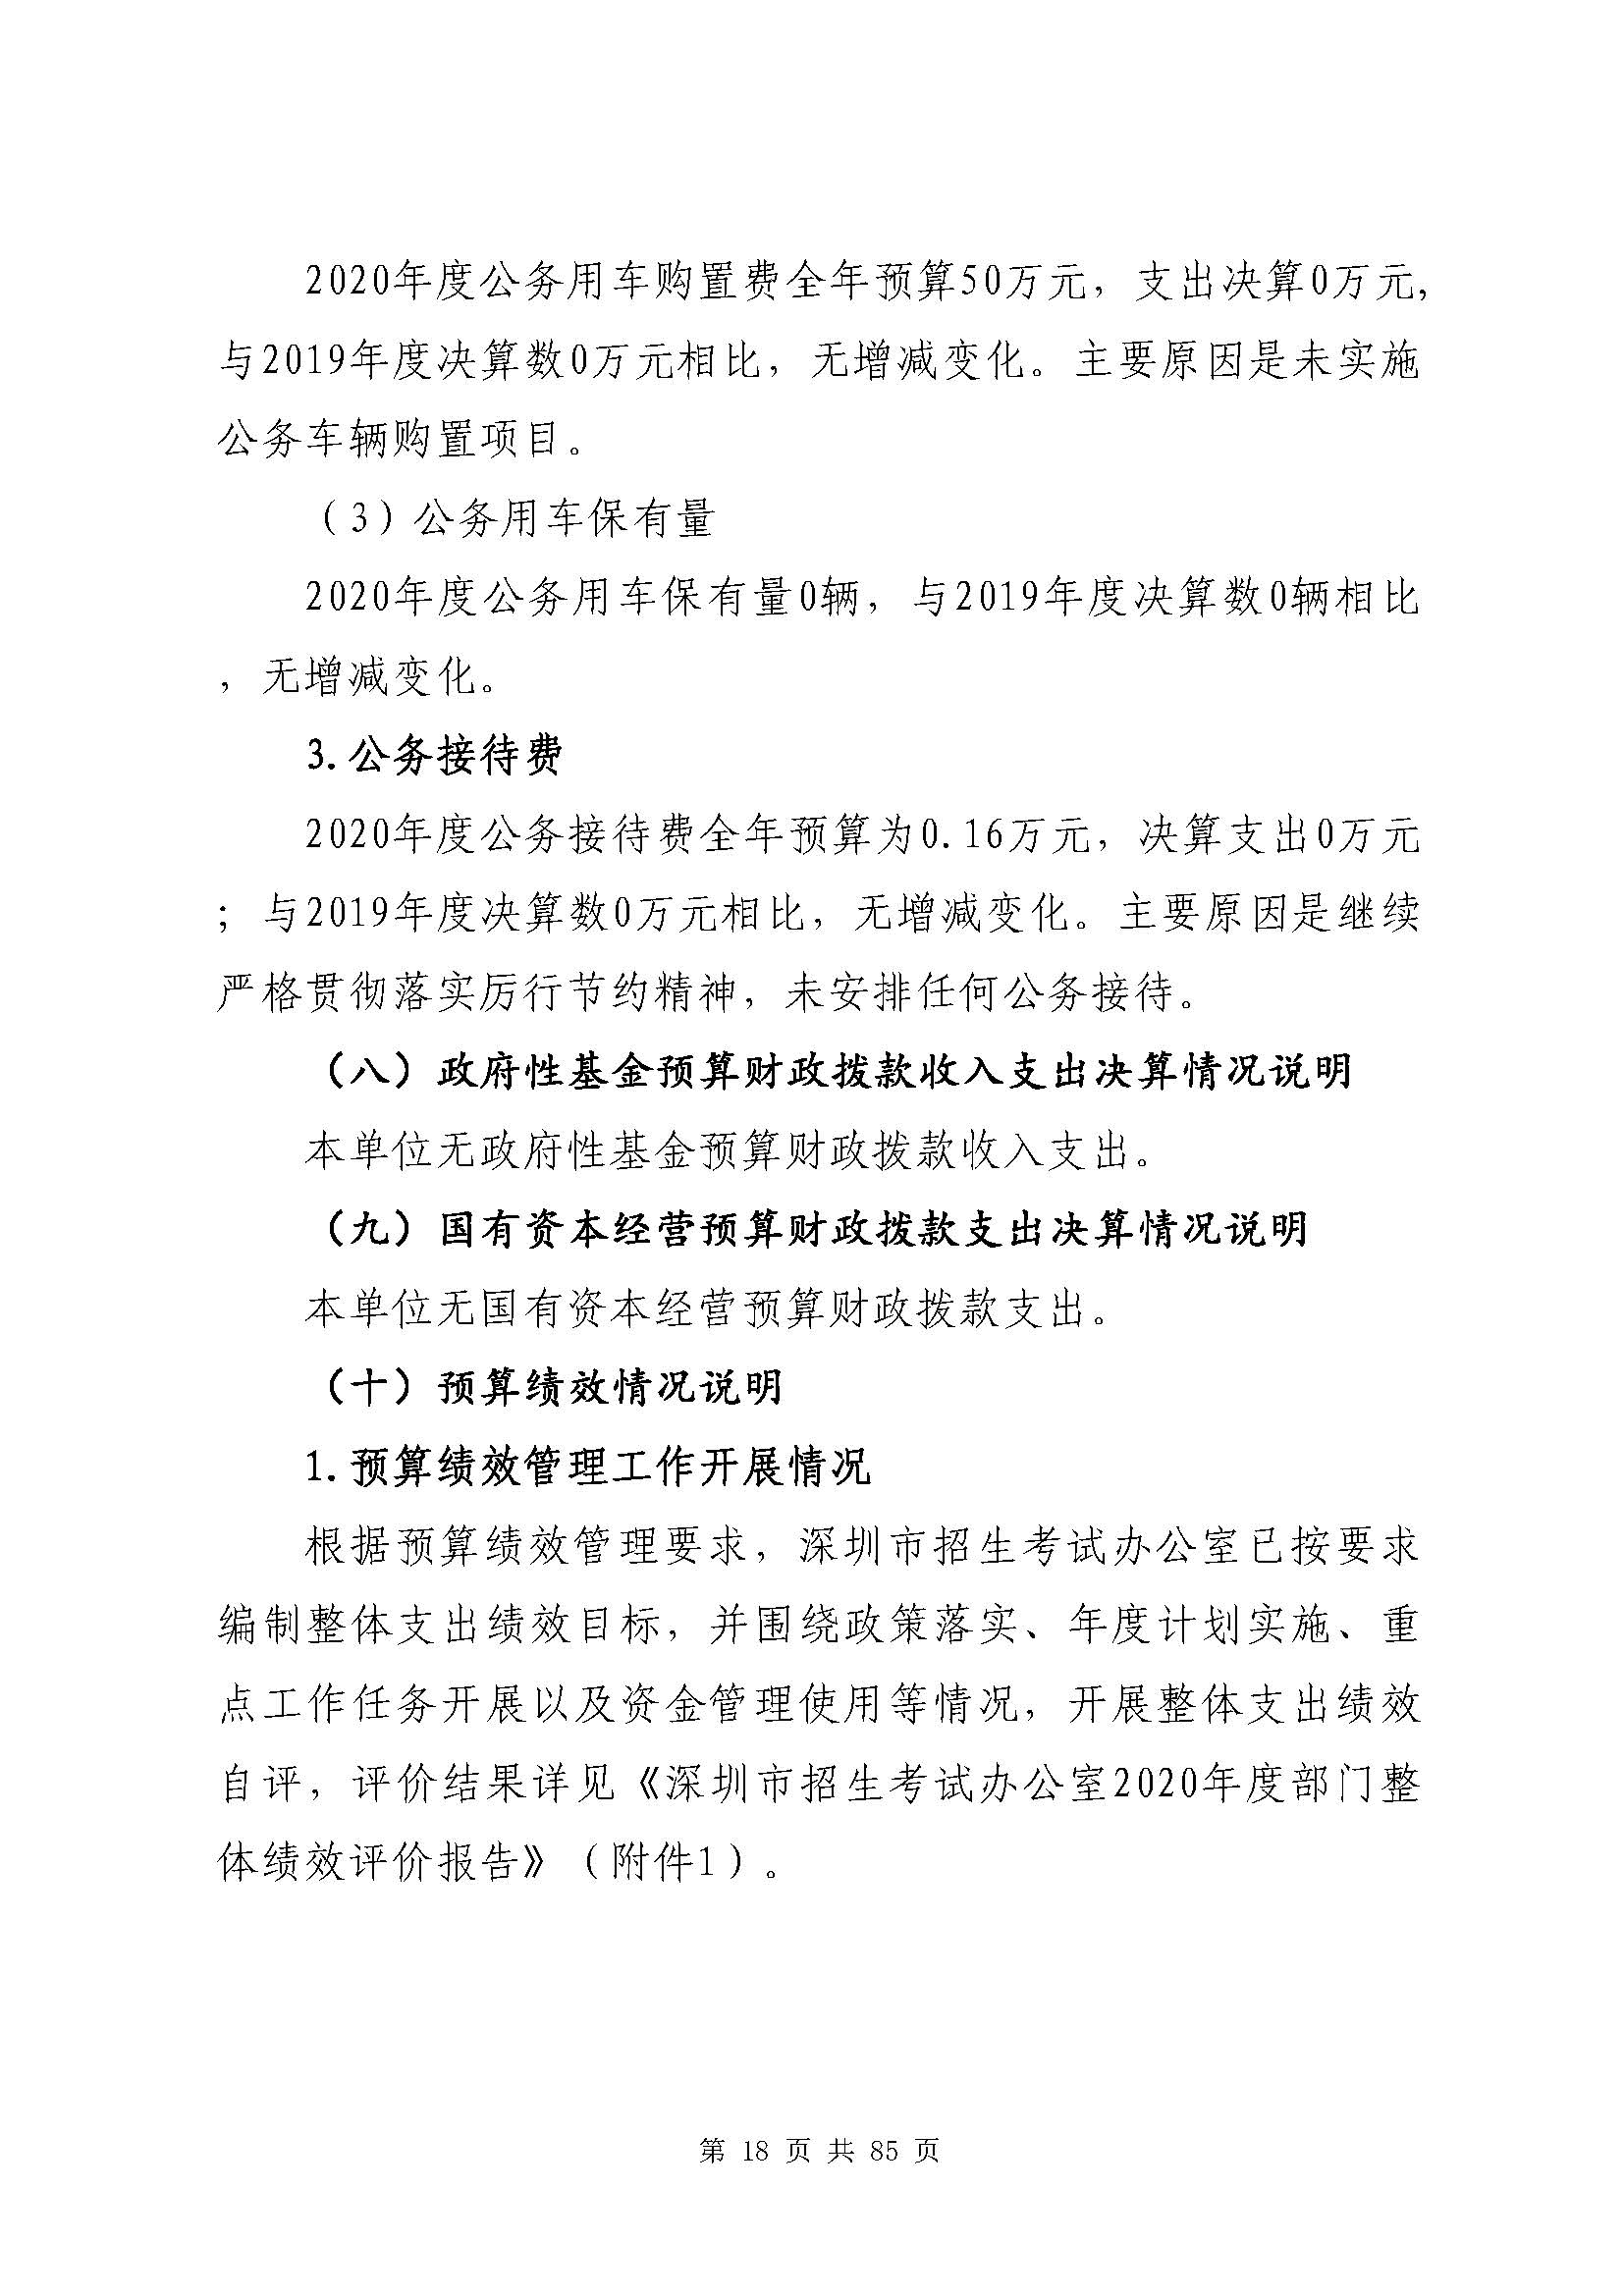 深圳市招生考试办公室2020年度部门决算_页面_19.jpg